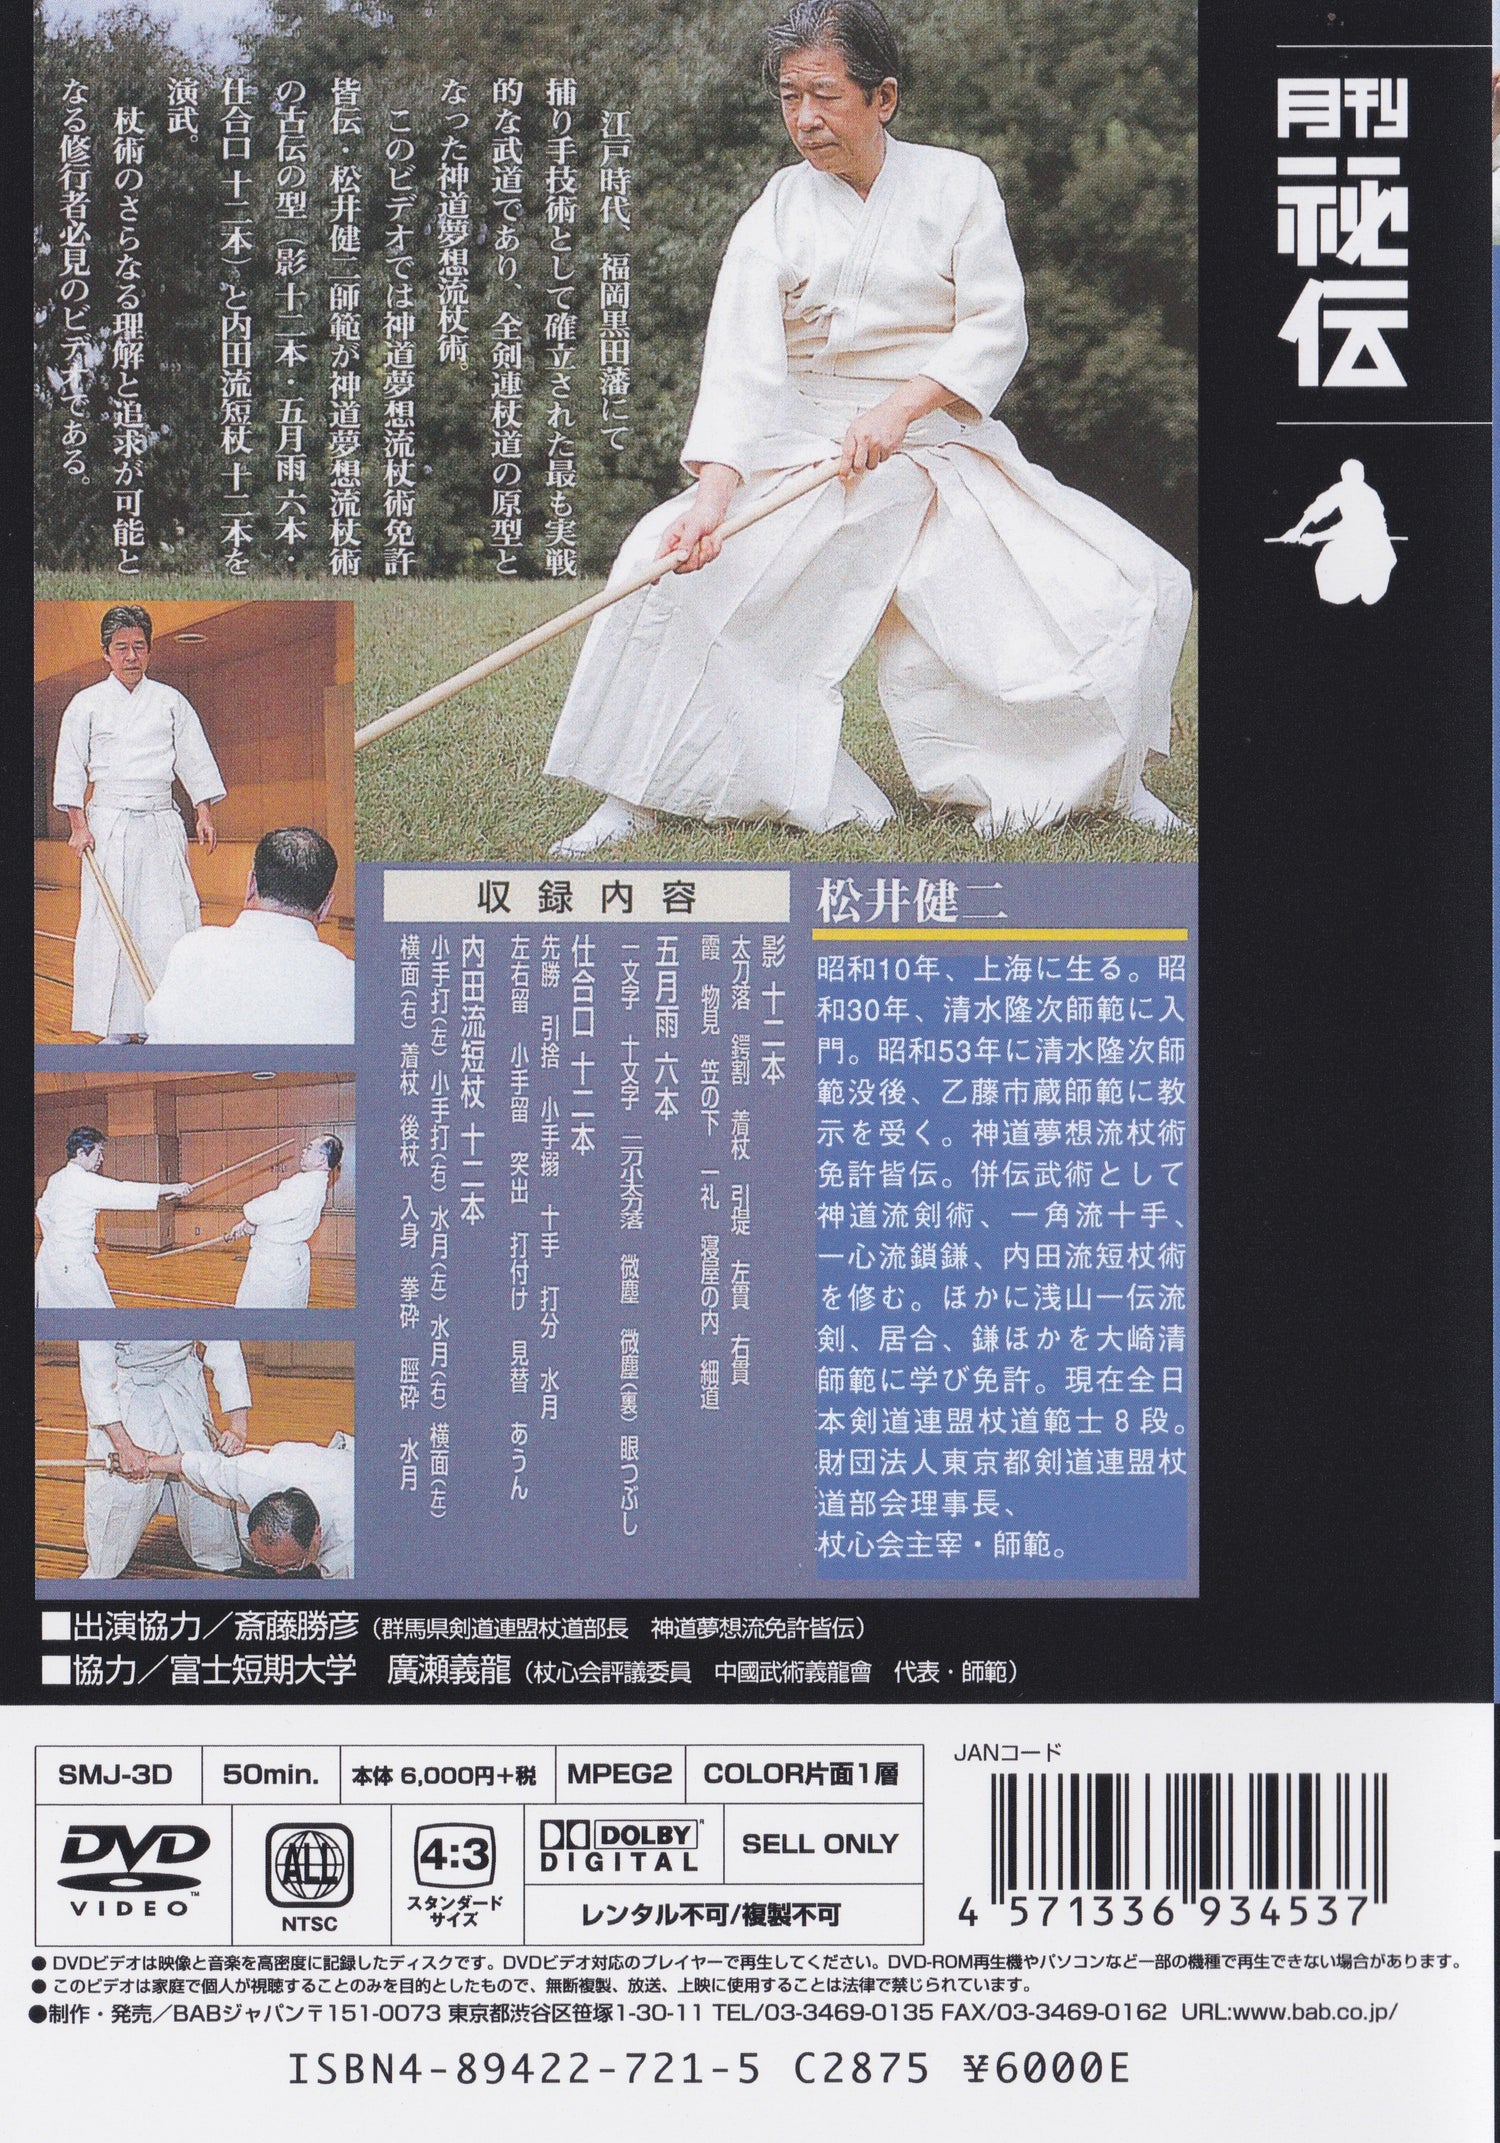 神道夢想流 テクニカルスキル Vol.3 松井健二 DVD